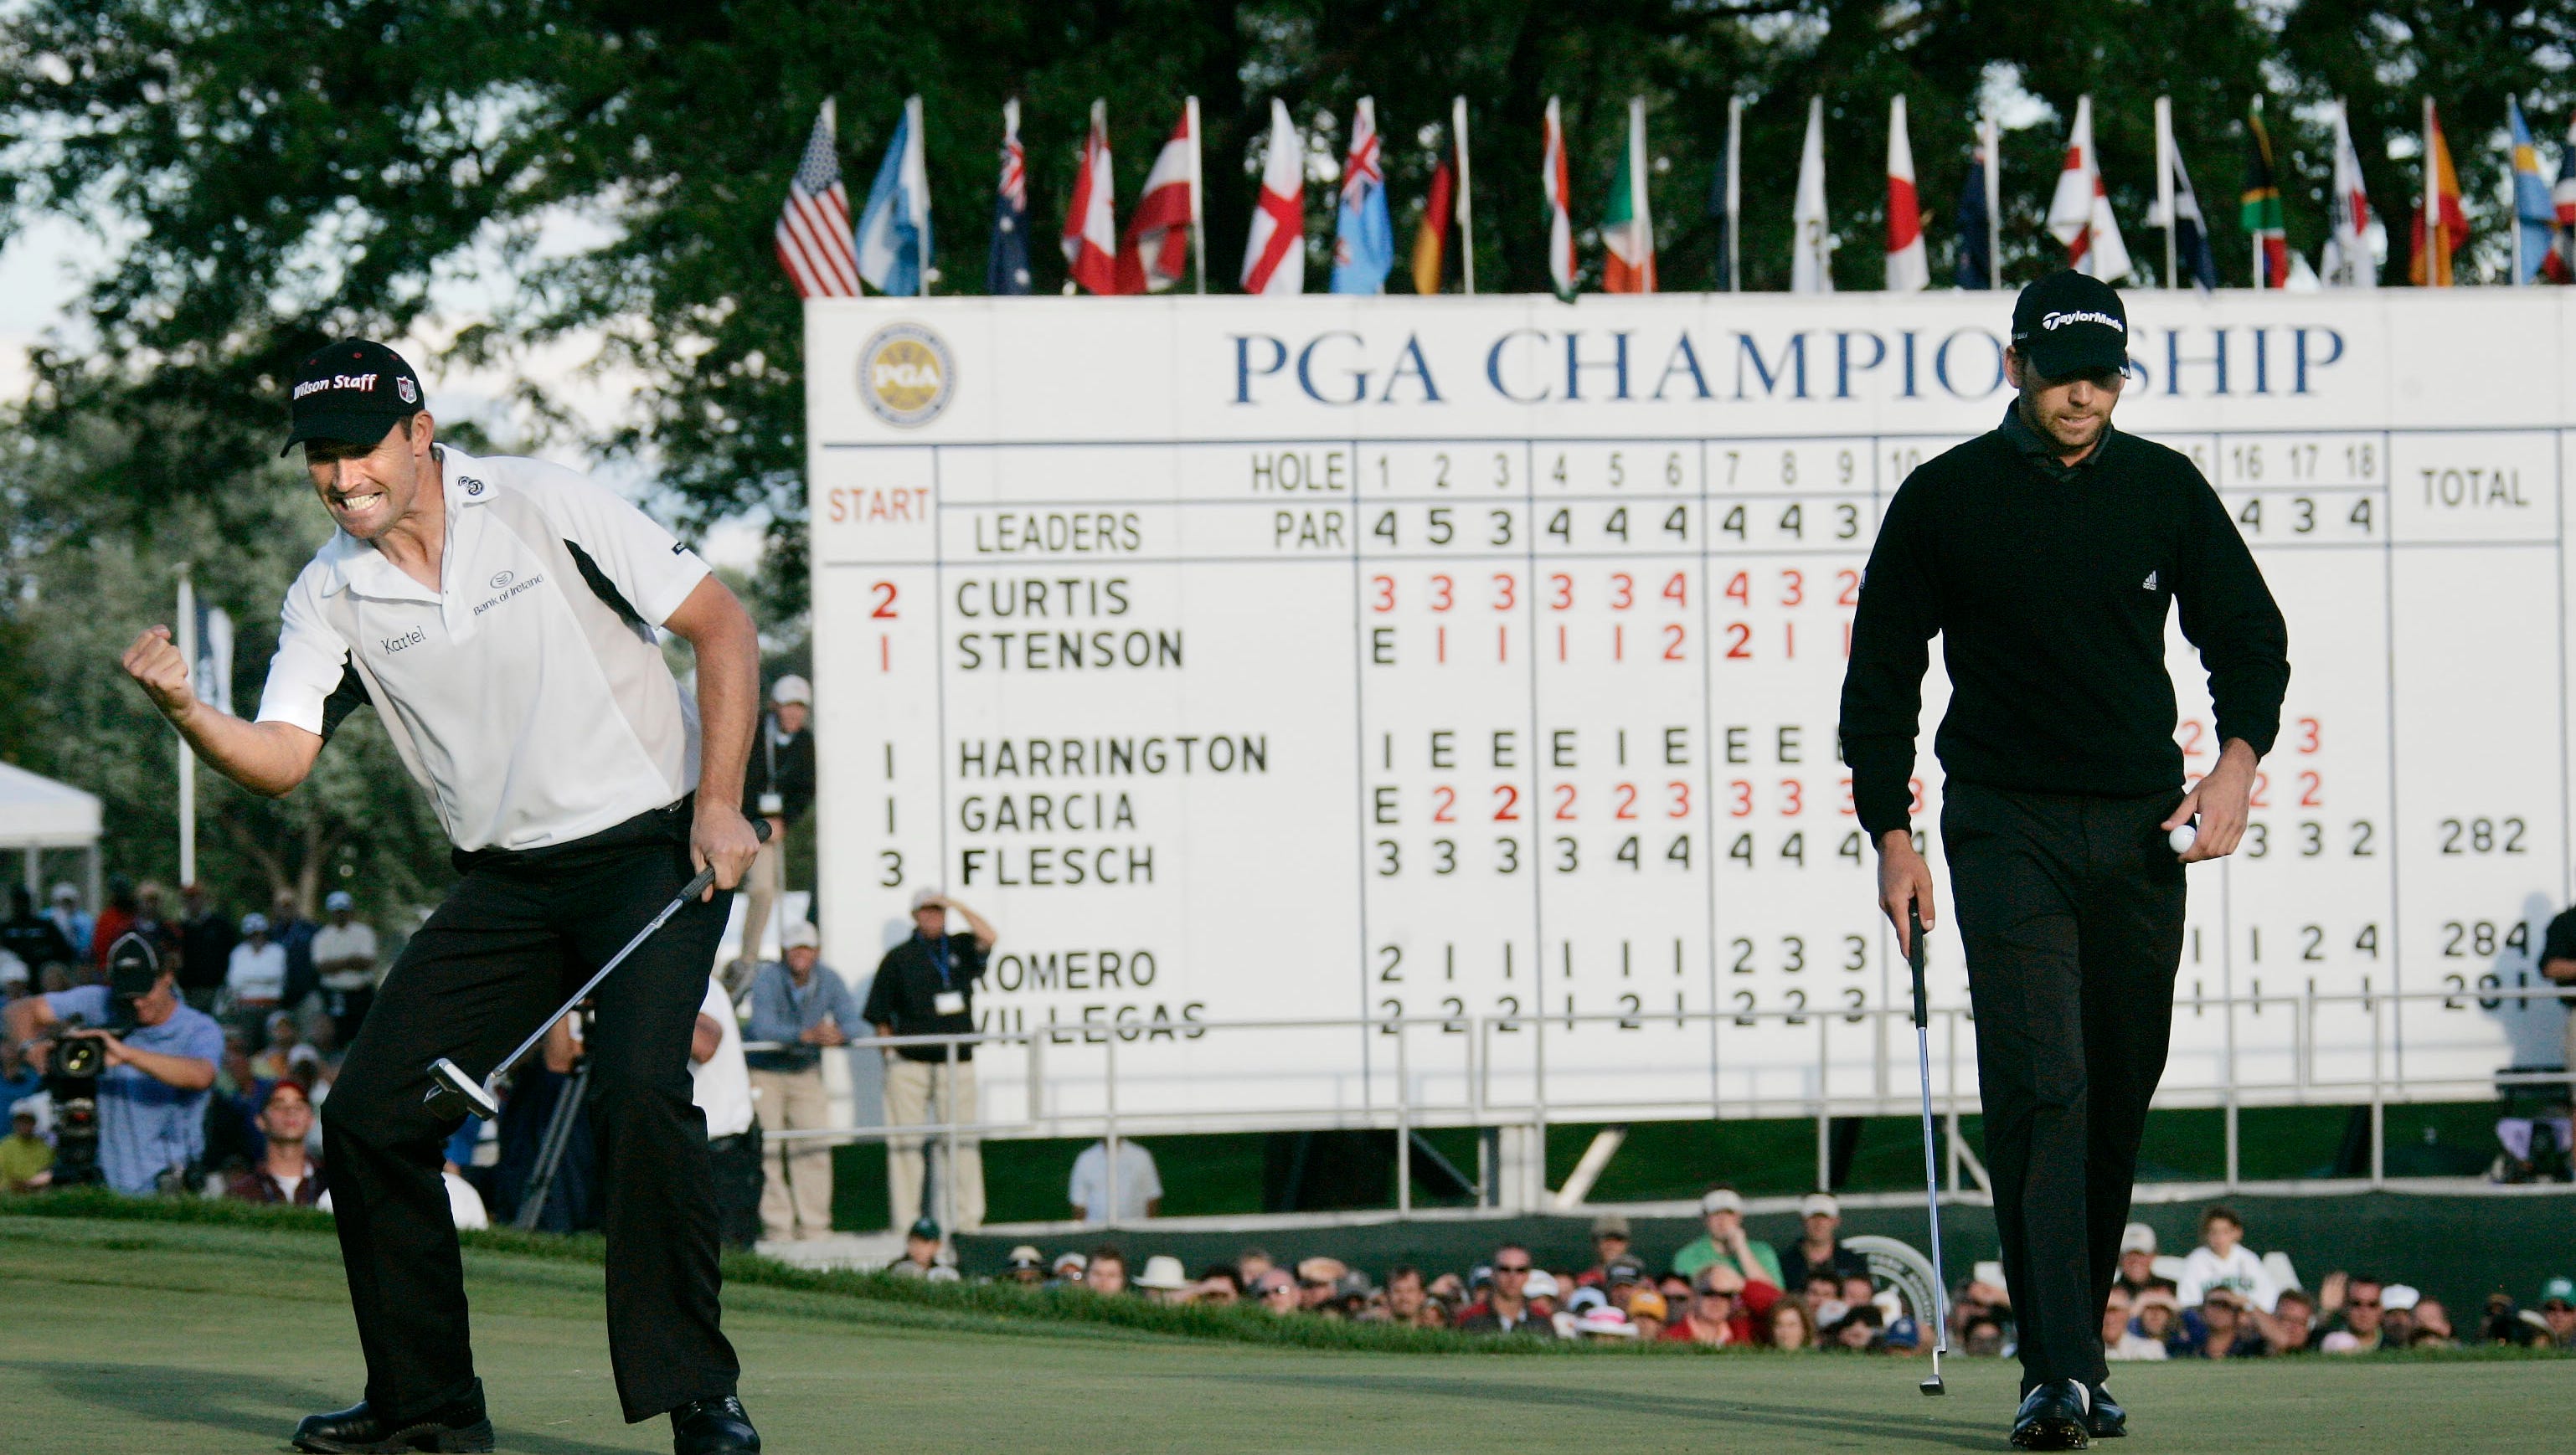 Padraig Harrington celebrates his victory at the 2008 PGA Championship at Oakland Hills.